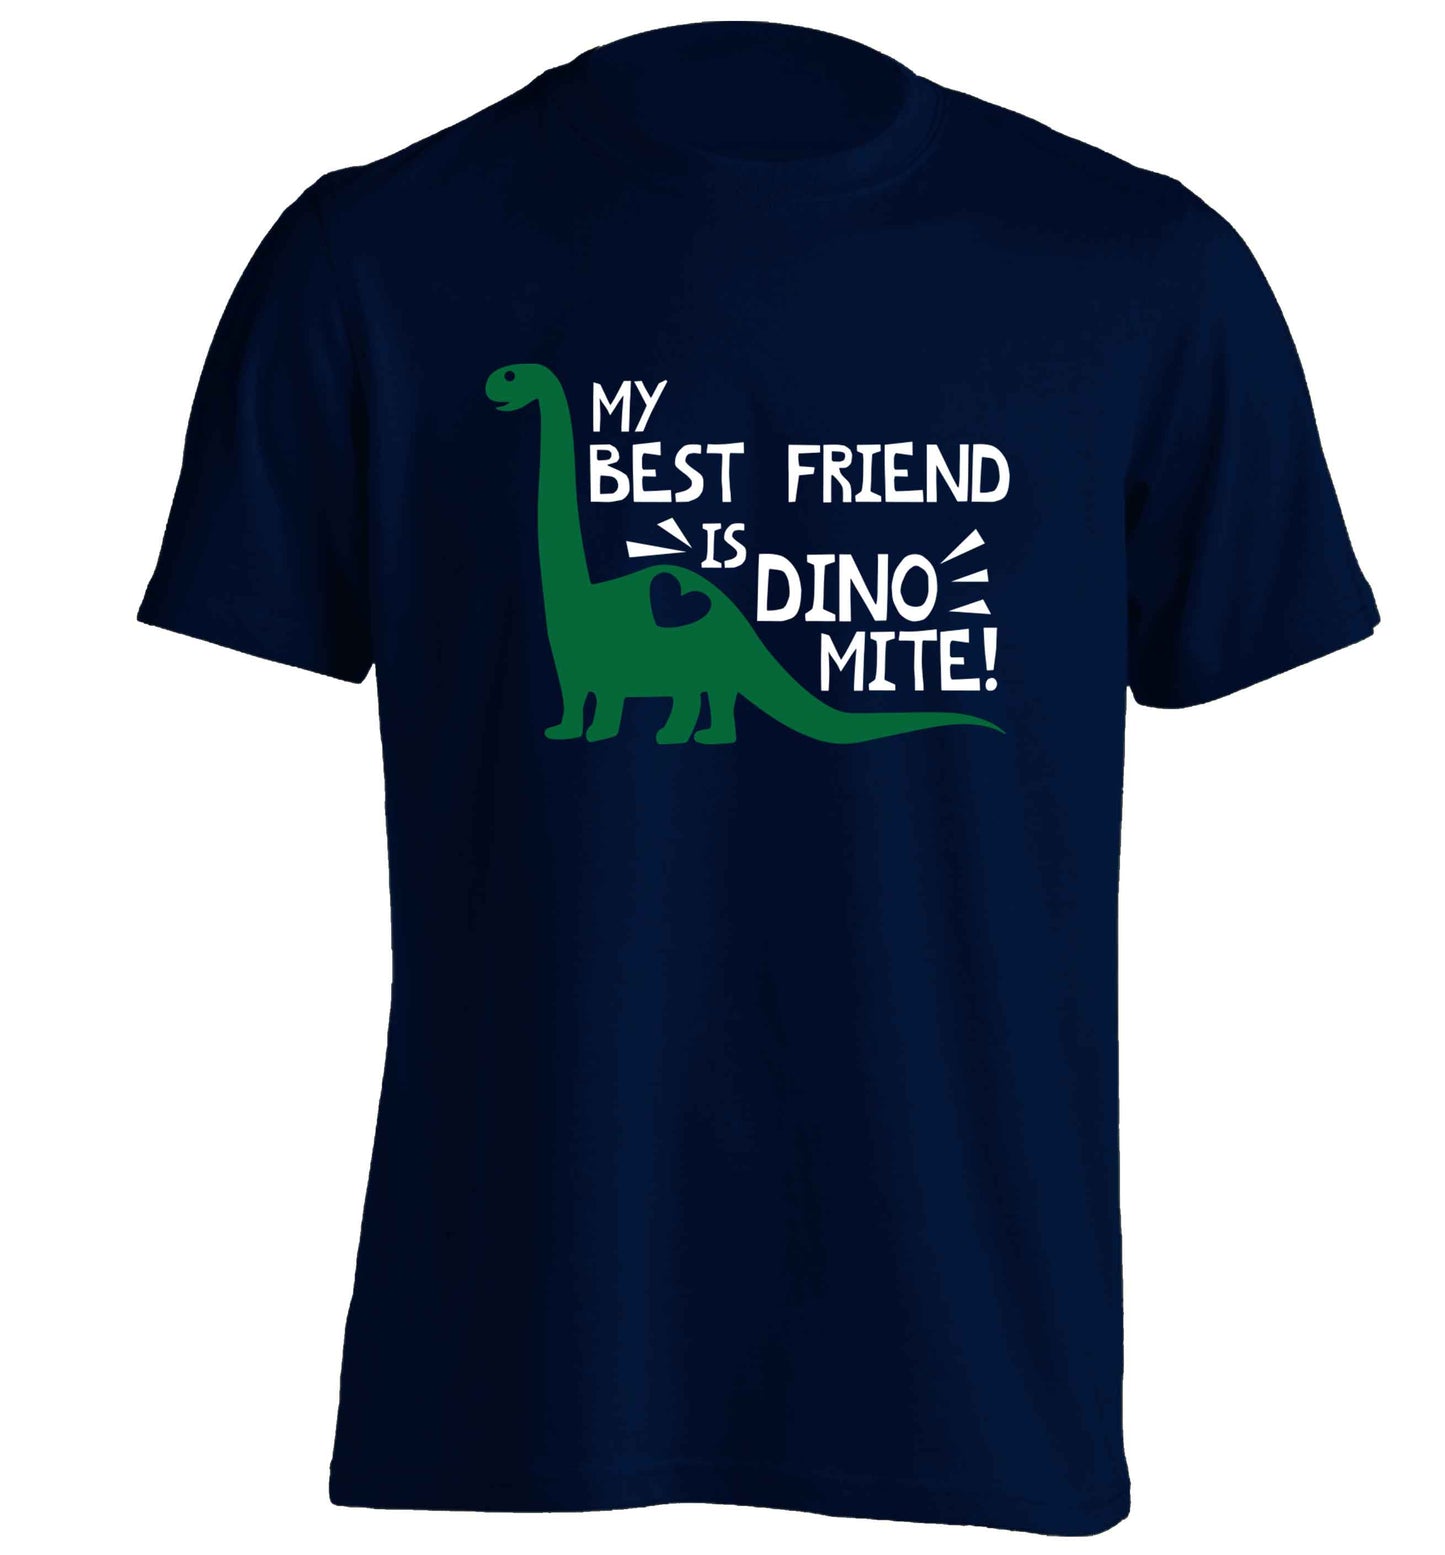 My best friend is dinomite! adults unisex navy Tshirt 2XL